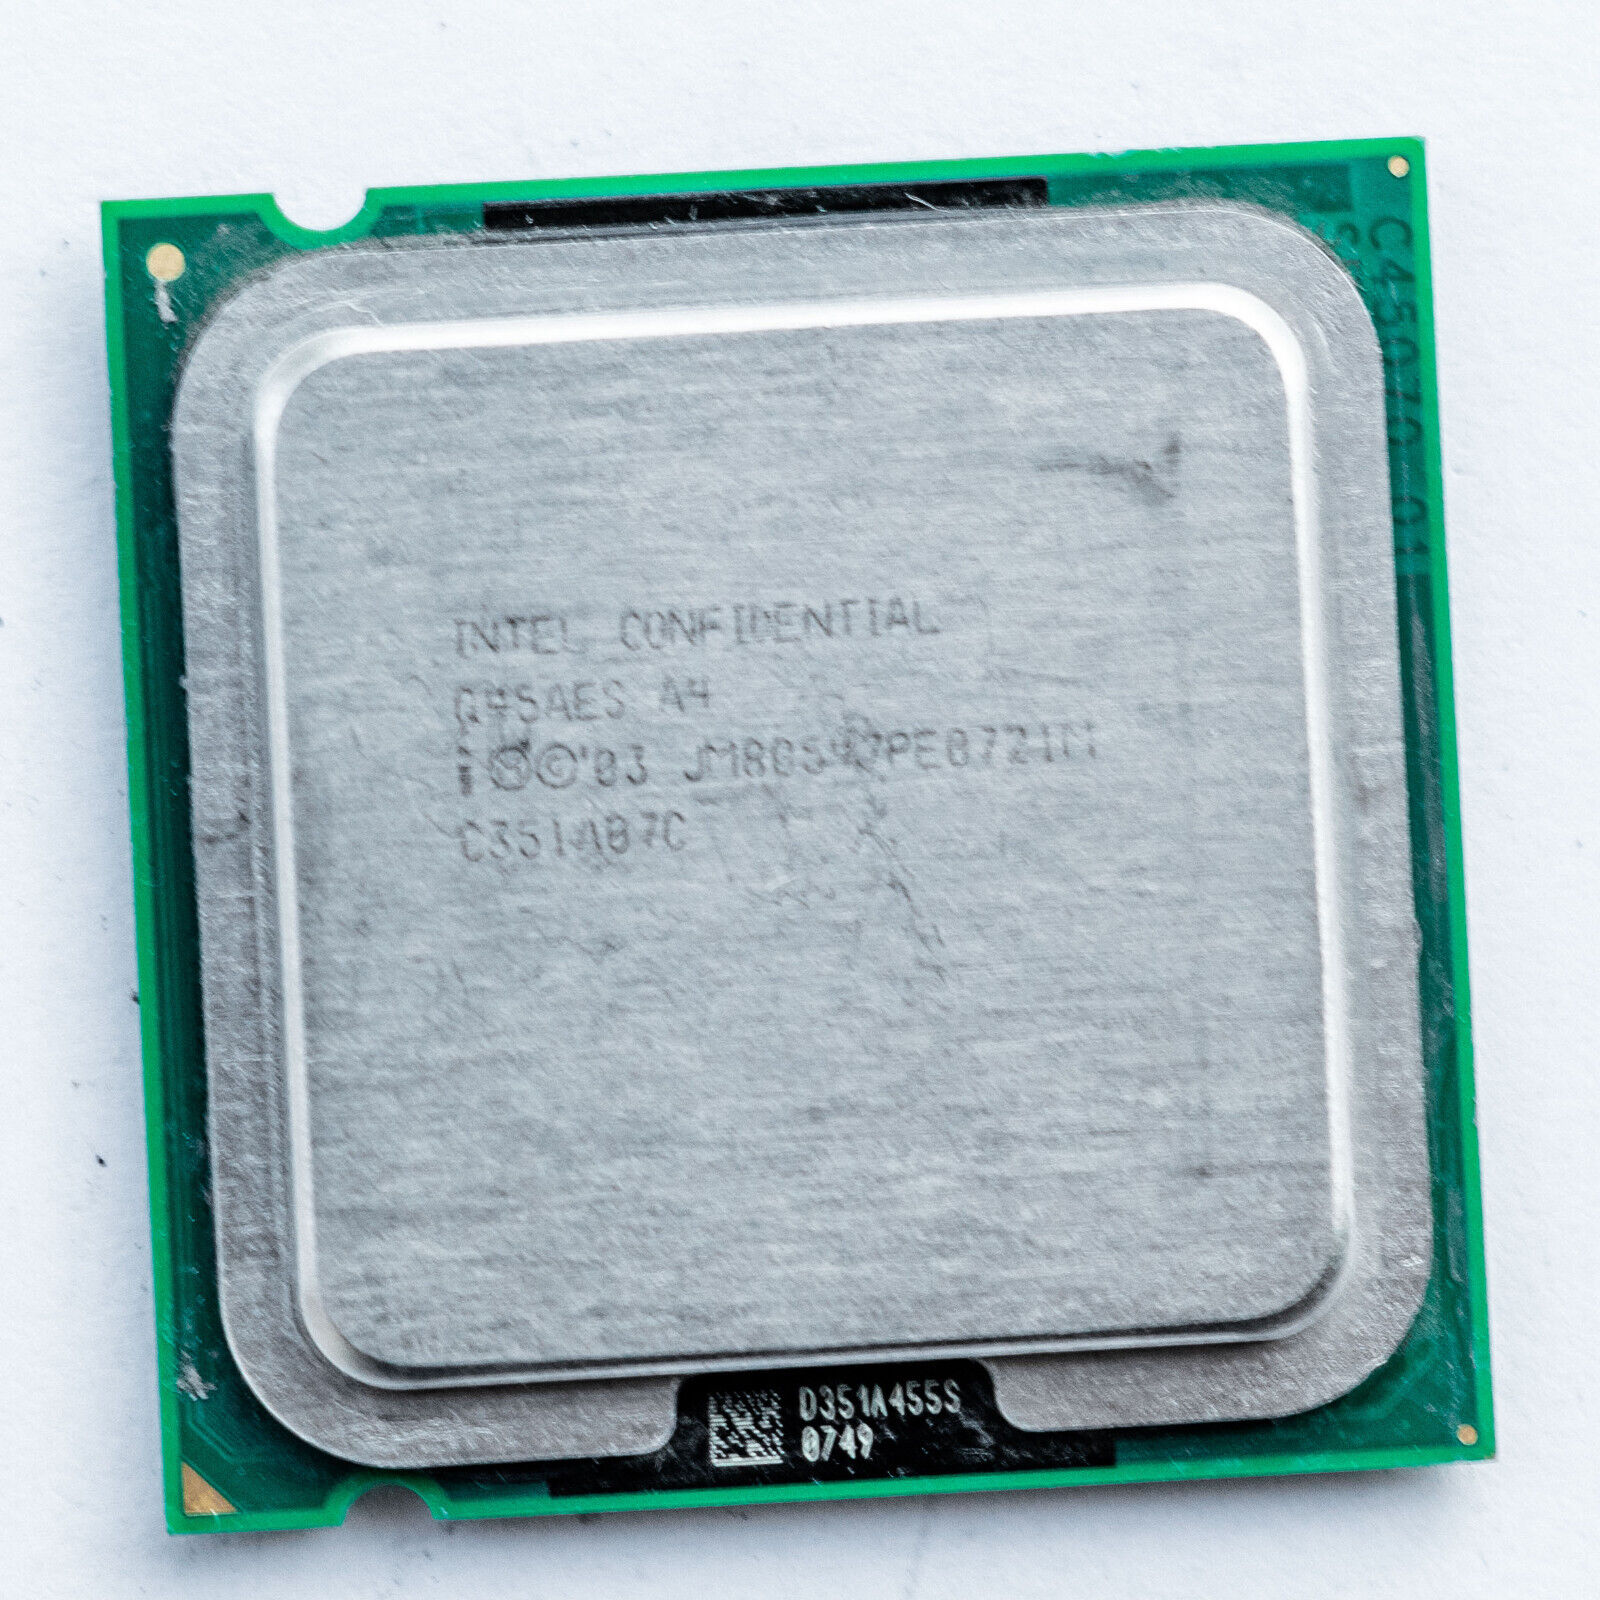 Intel Confidential Q45AES Pentium 4 510 2.8GHz LGA775 Prescott 1MB Processor